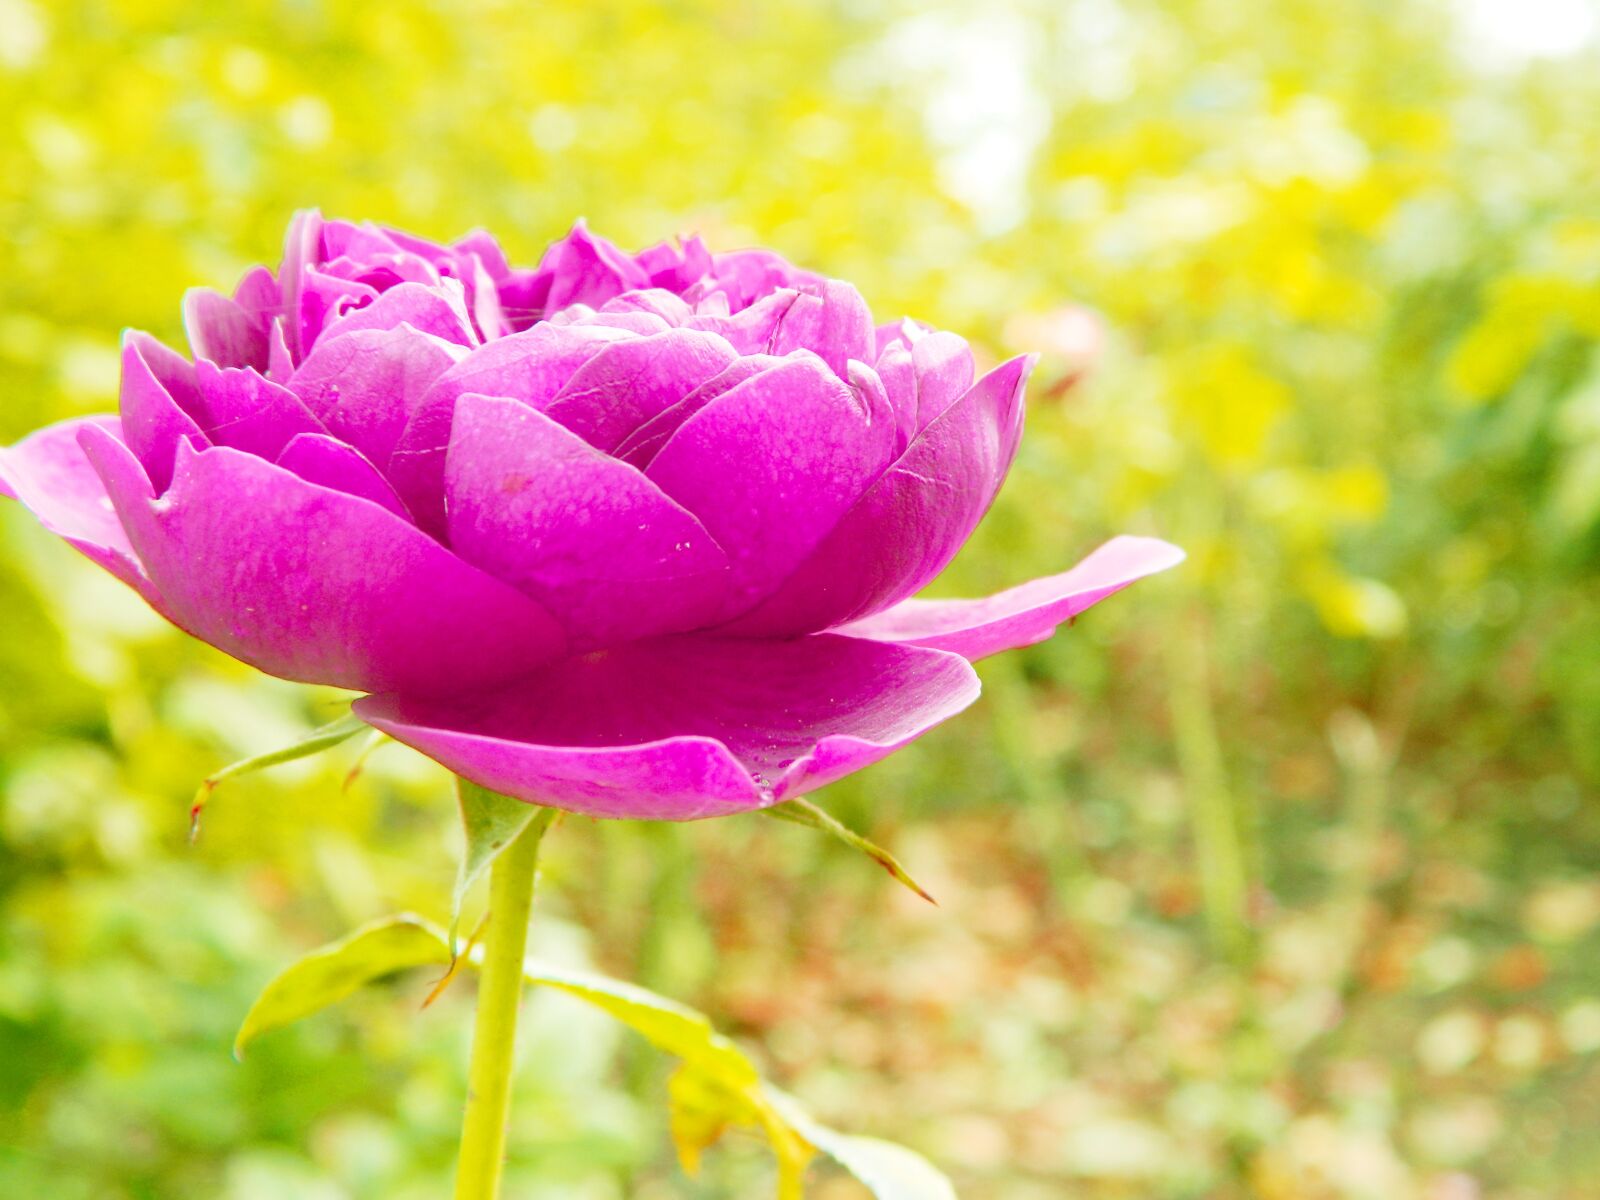 Nikon COOLPIX L310 sample photo. Pink, rose, petal photography